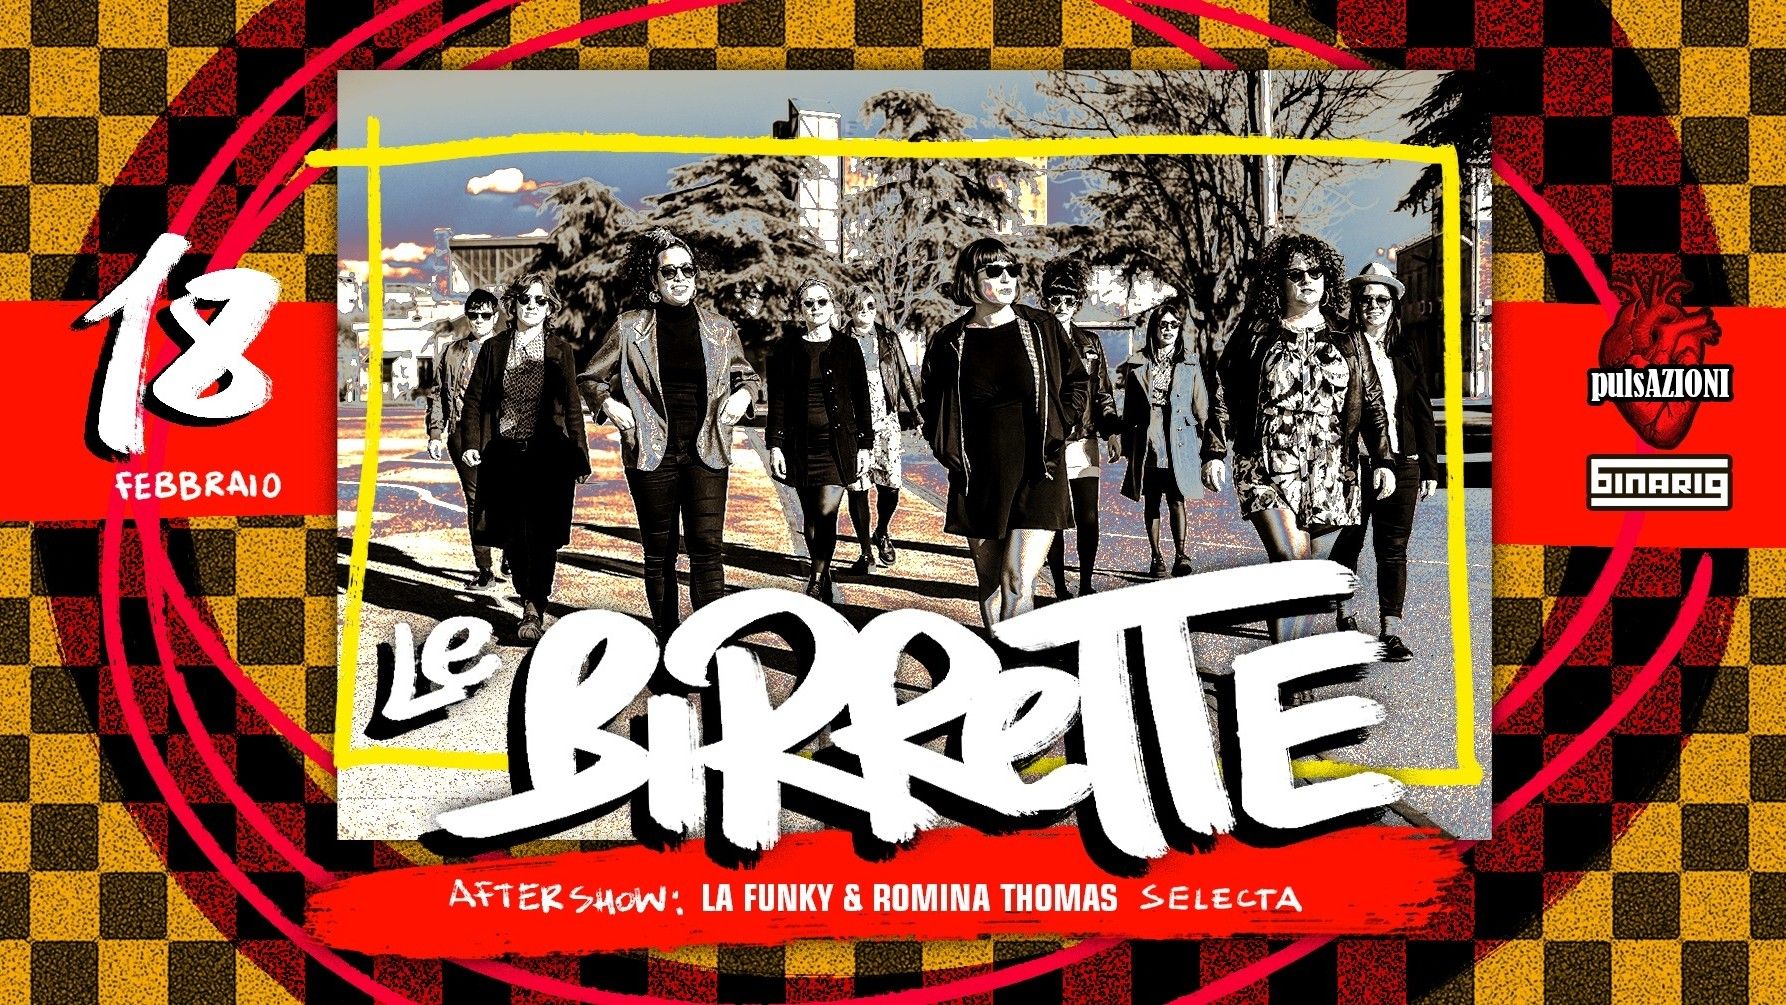 Le Birrette | after show La Funky & Romina Thomas |selecta|